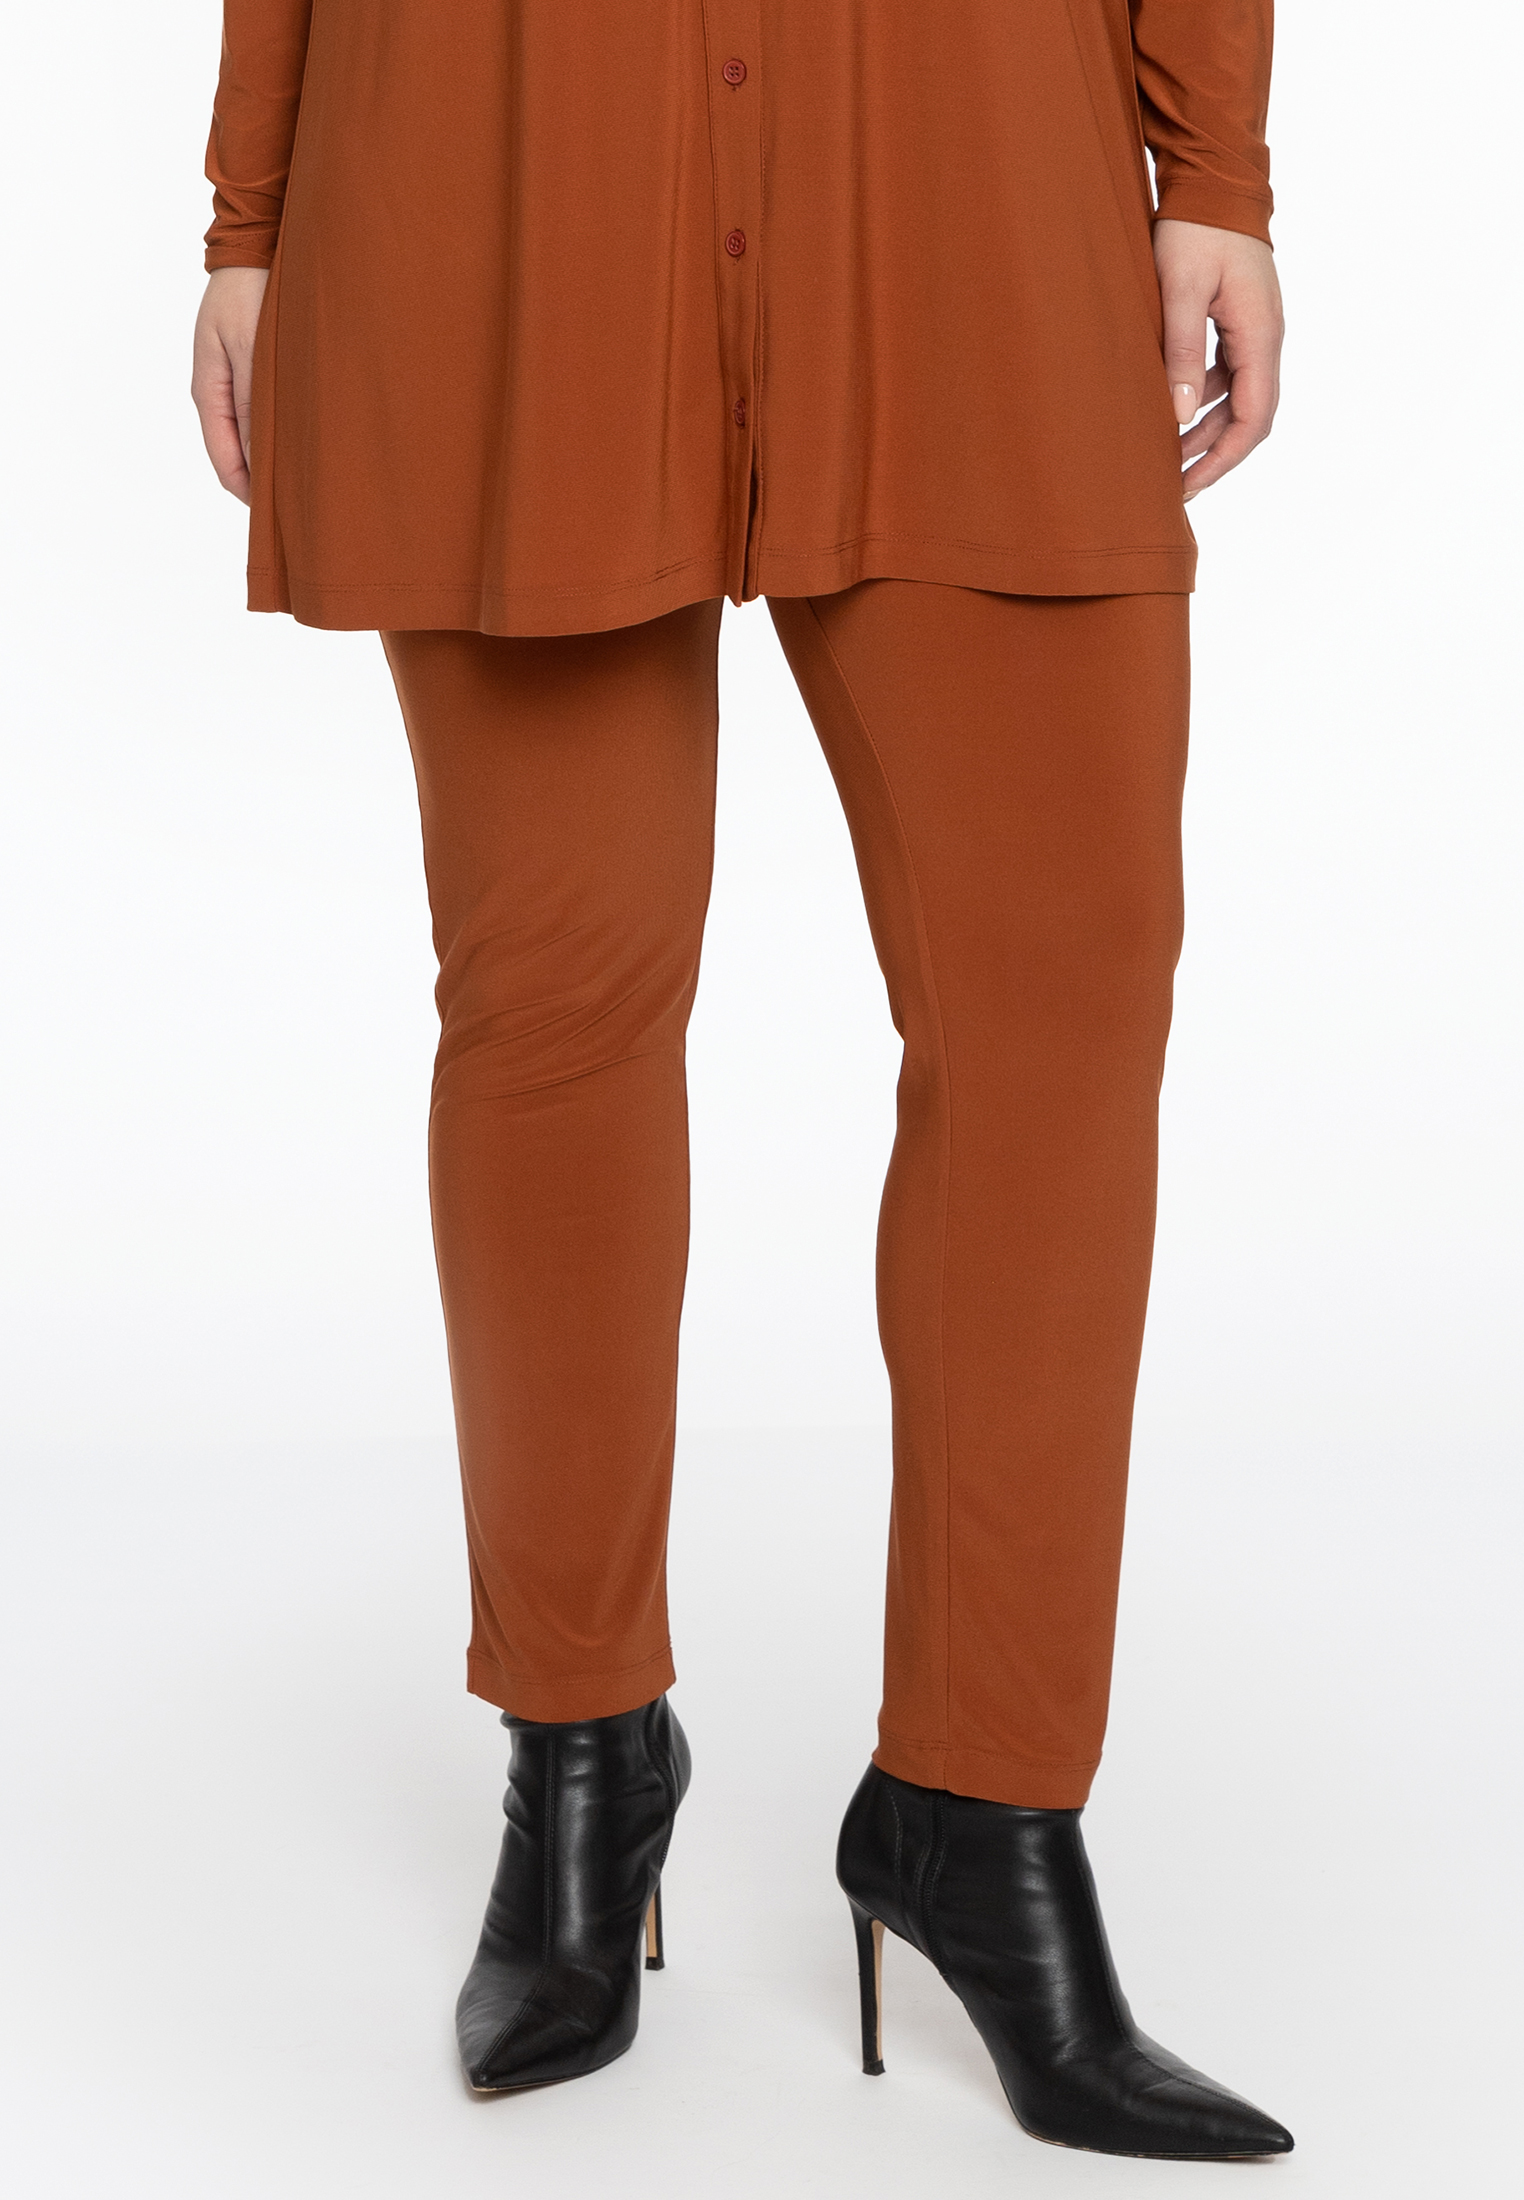 Pantalon DOLCE 54/56 mid brown